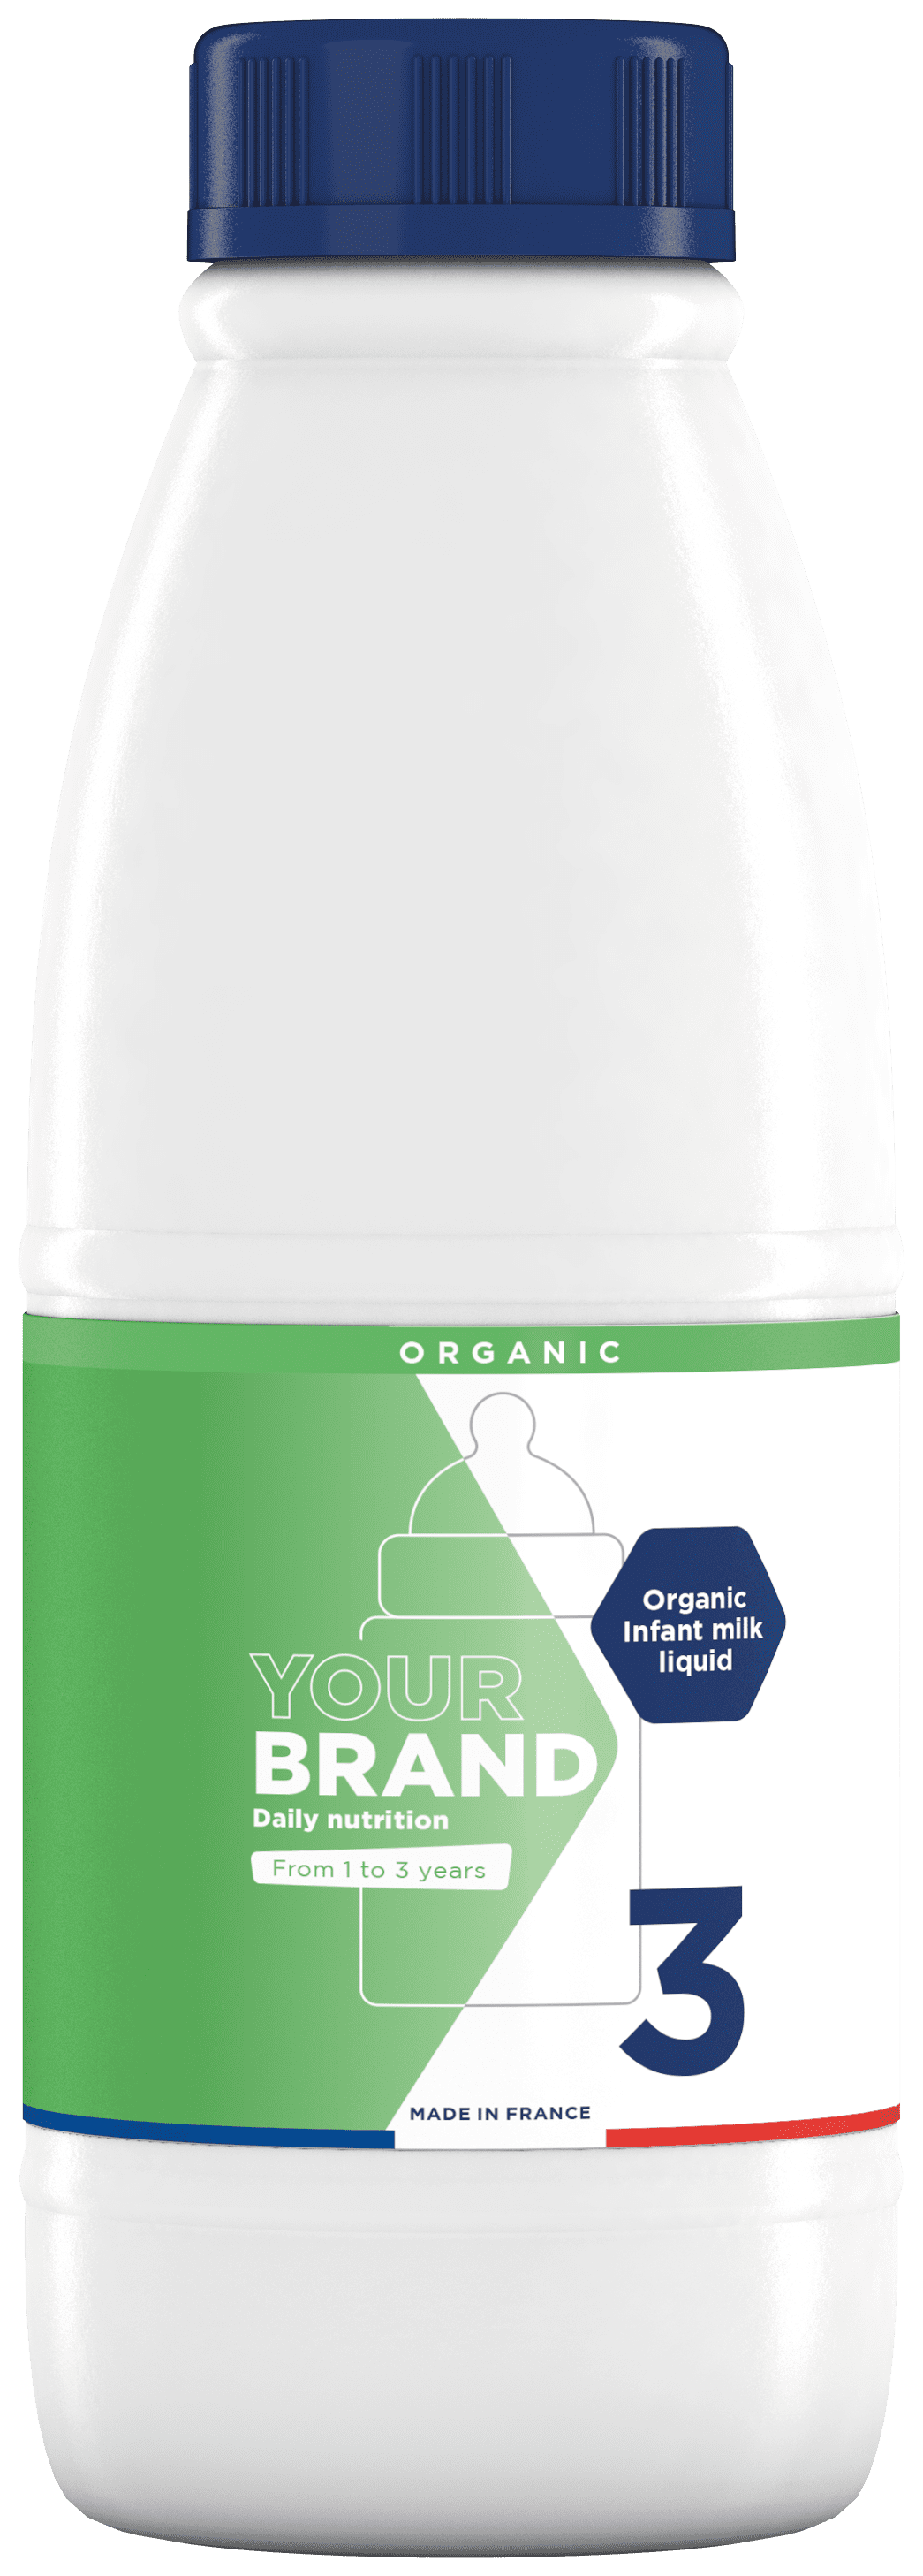 infant milk liquid Organic 3